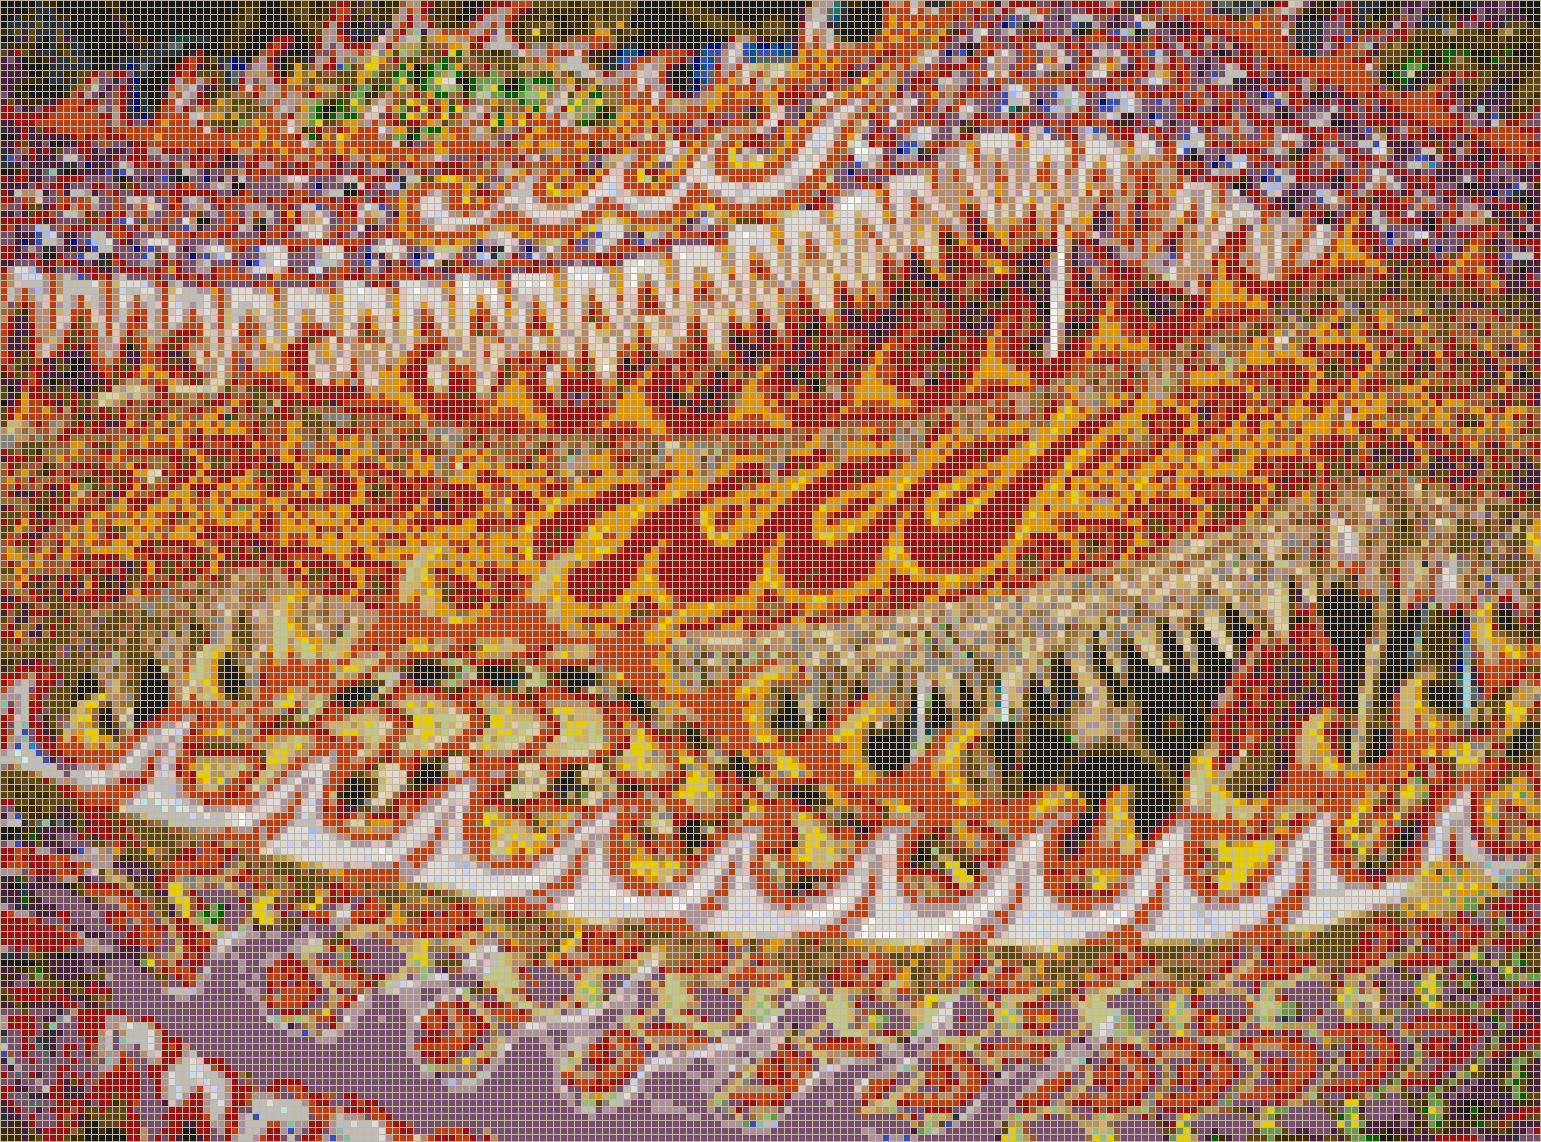 Singapore Dragons - Mosaic Tile Art